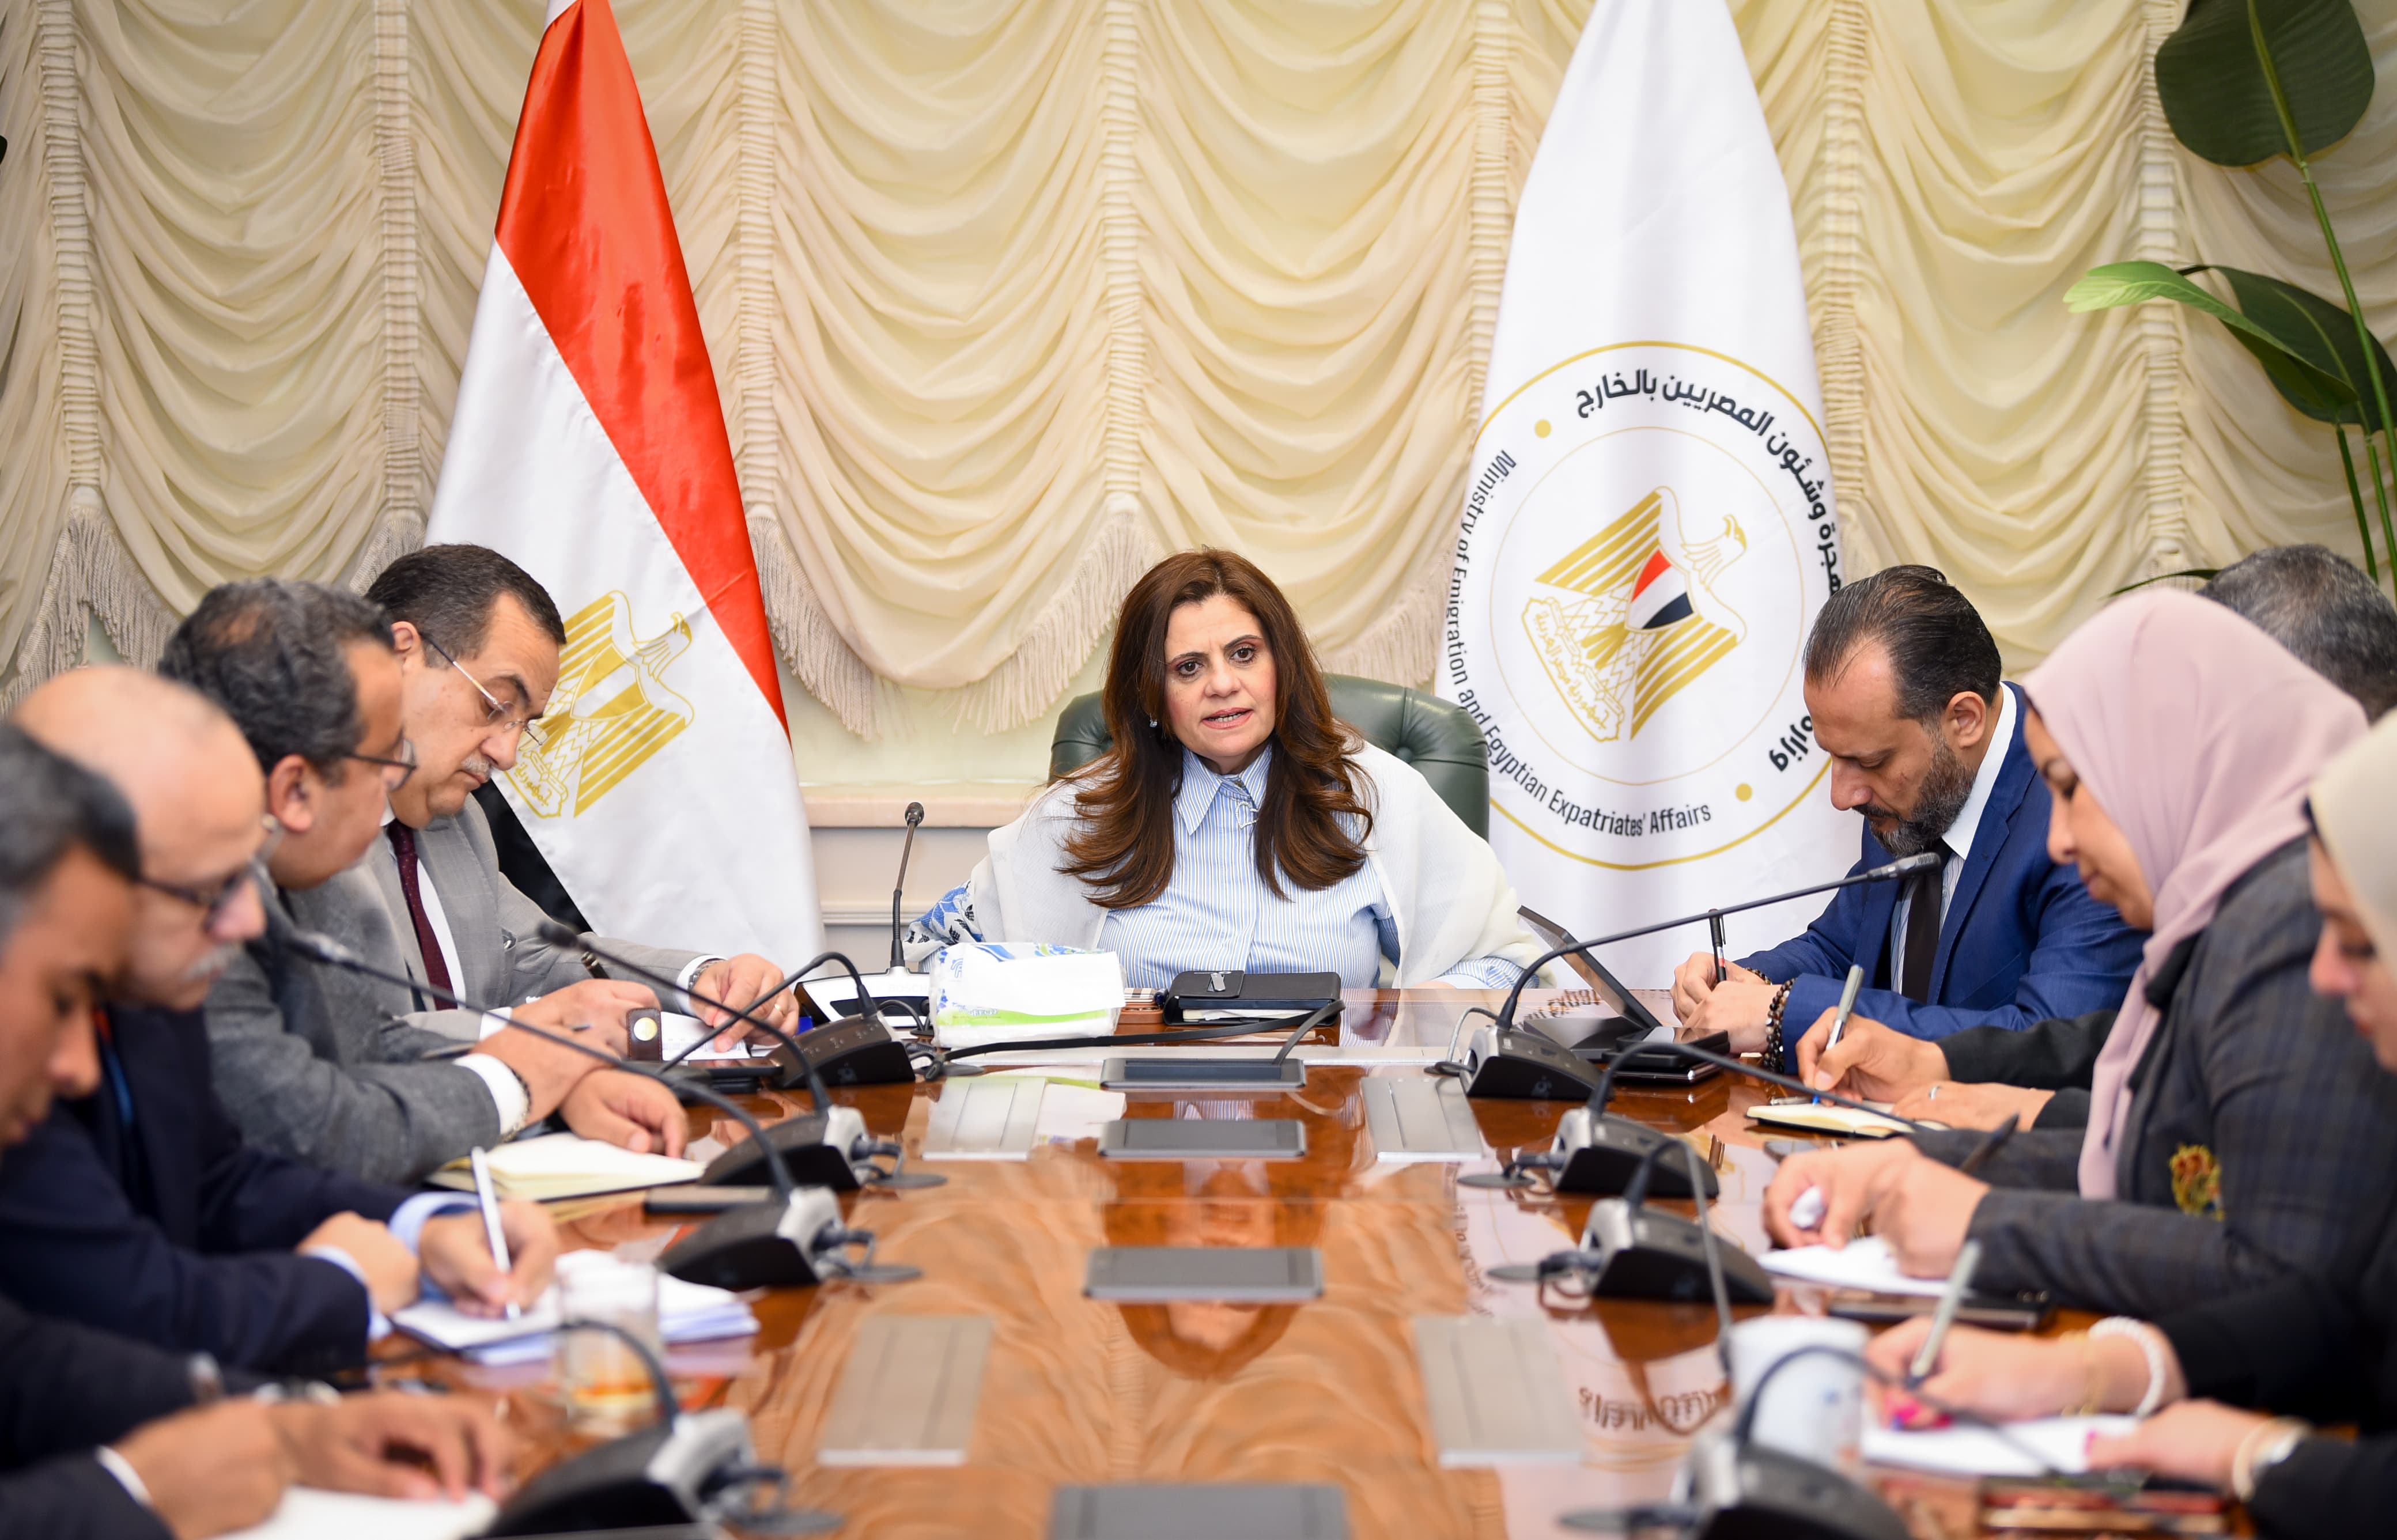 وزيرةالهجرة: مؤتمرالمصريين بالخارج النسخة الخامسة ينعقد على مدار يومين 4 و5 أغسطس المقبل